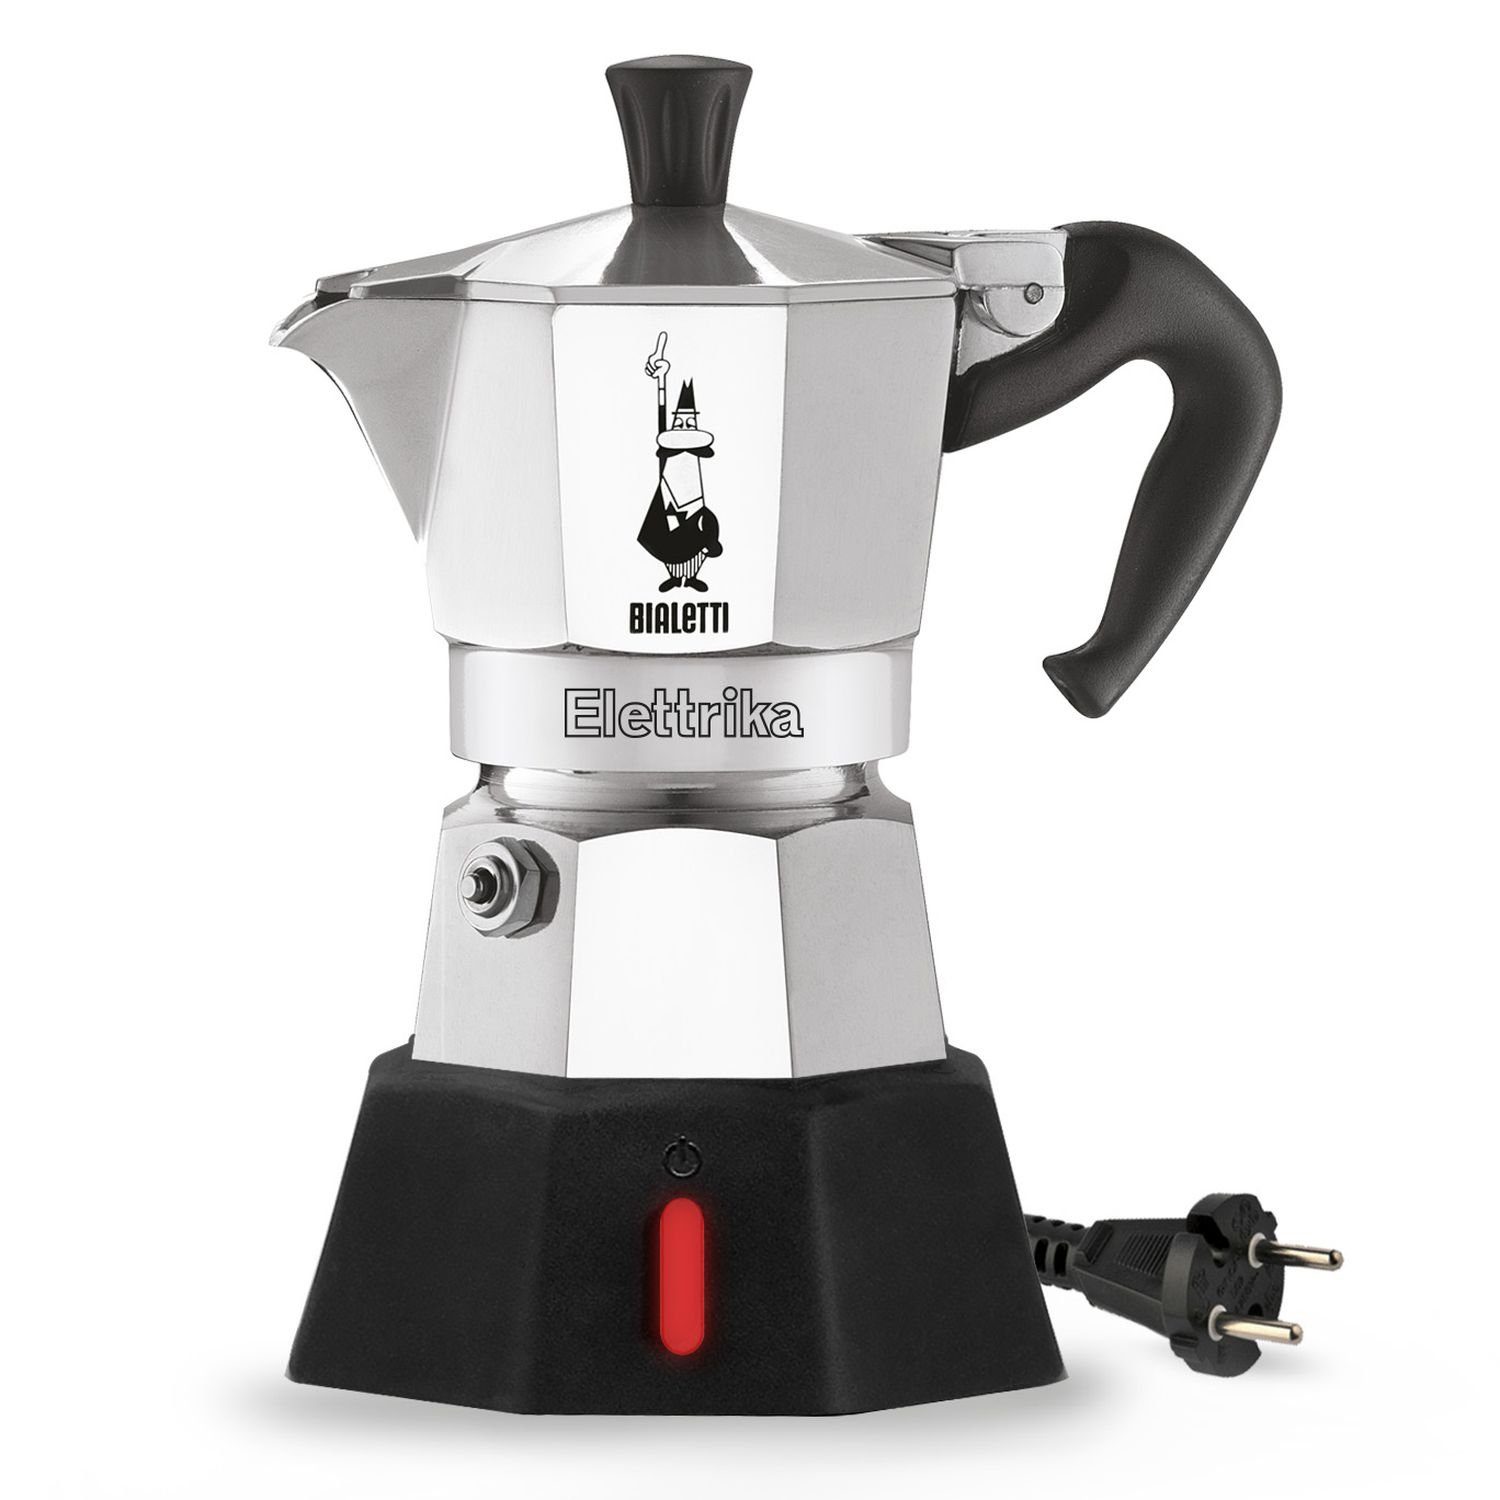 2 New Kaffeekanne Moka Tassen, BIALETTI Elettrika 0,09l Espressokocher